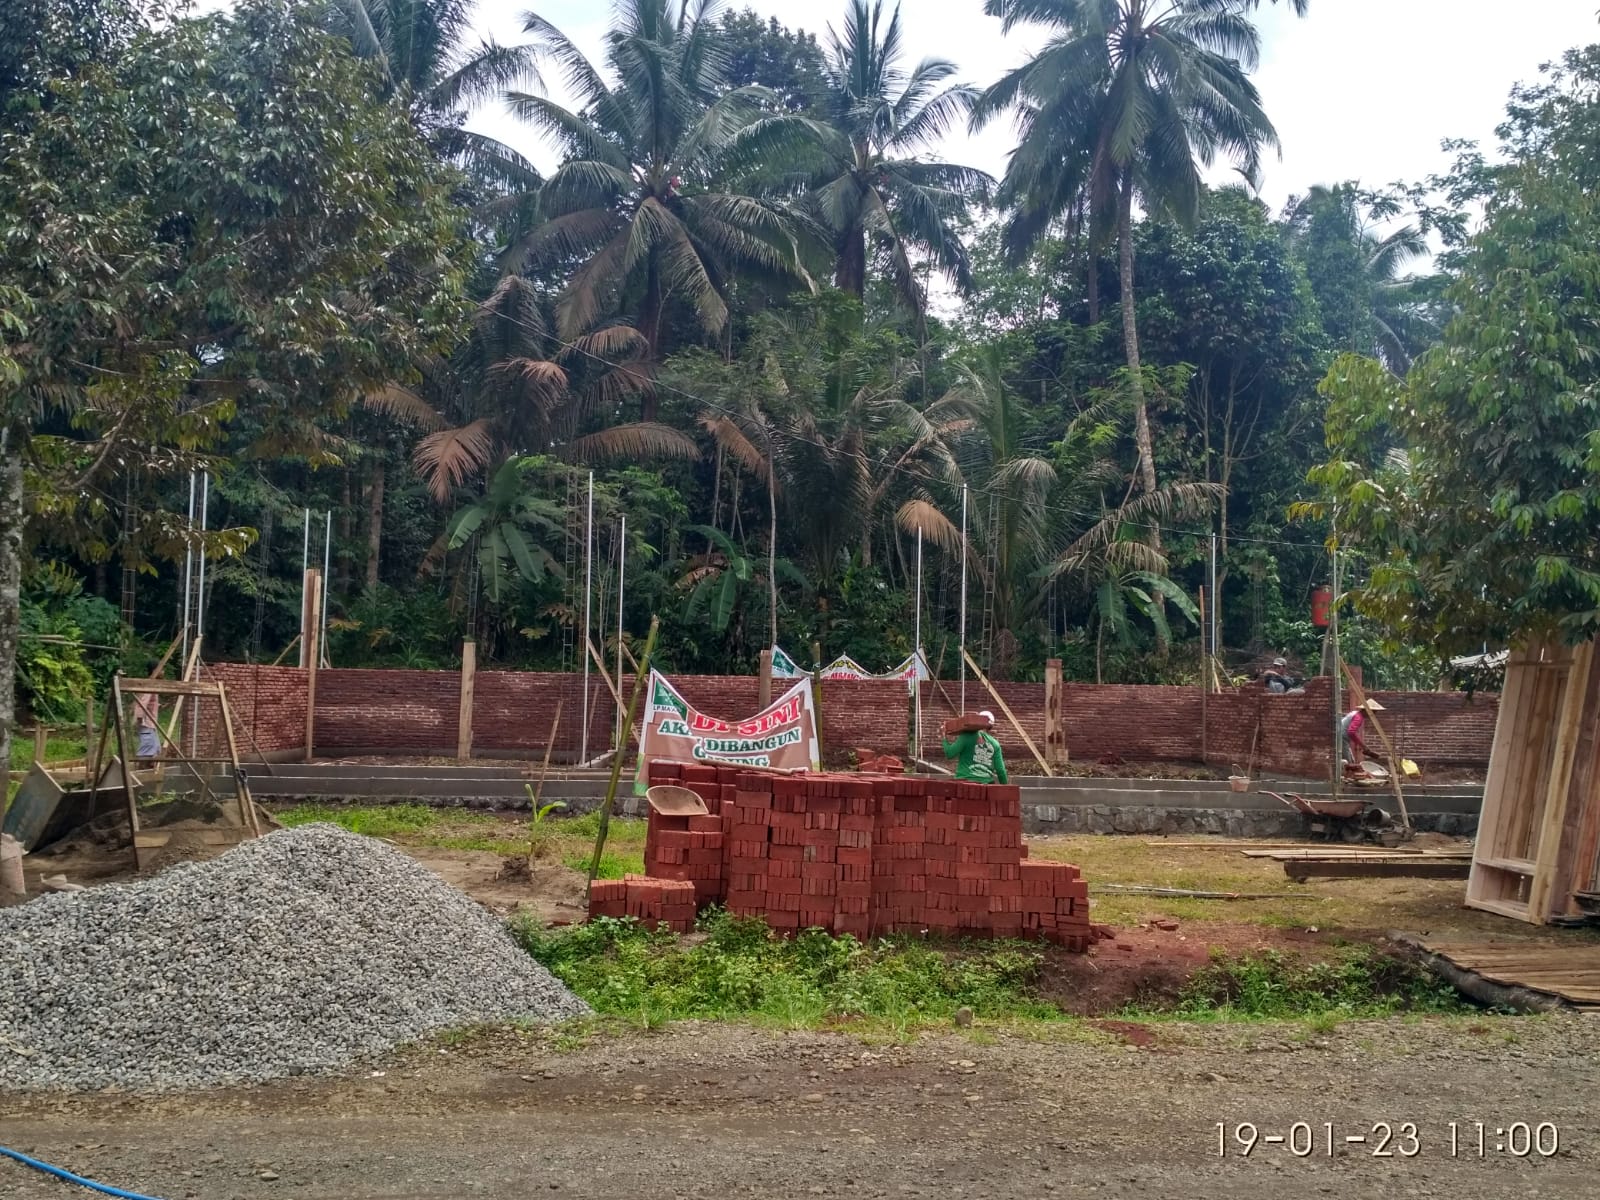 Pembangunan Gedung SLB di Pageraji Bentuk Ikhtiar Untuk Ijin Operasional